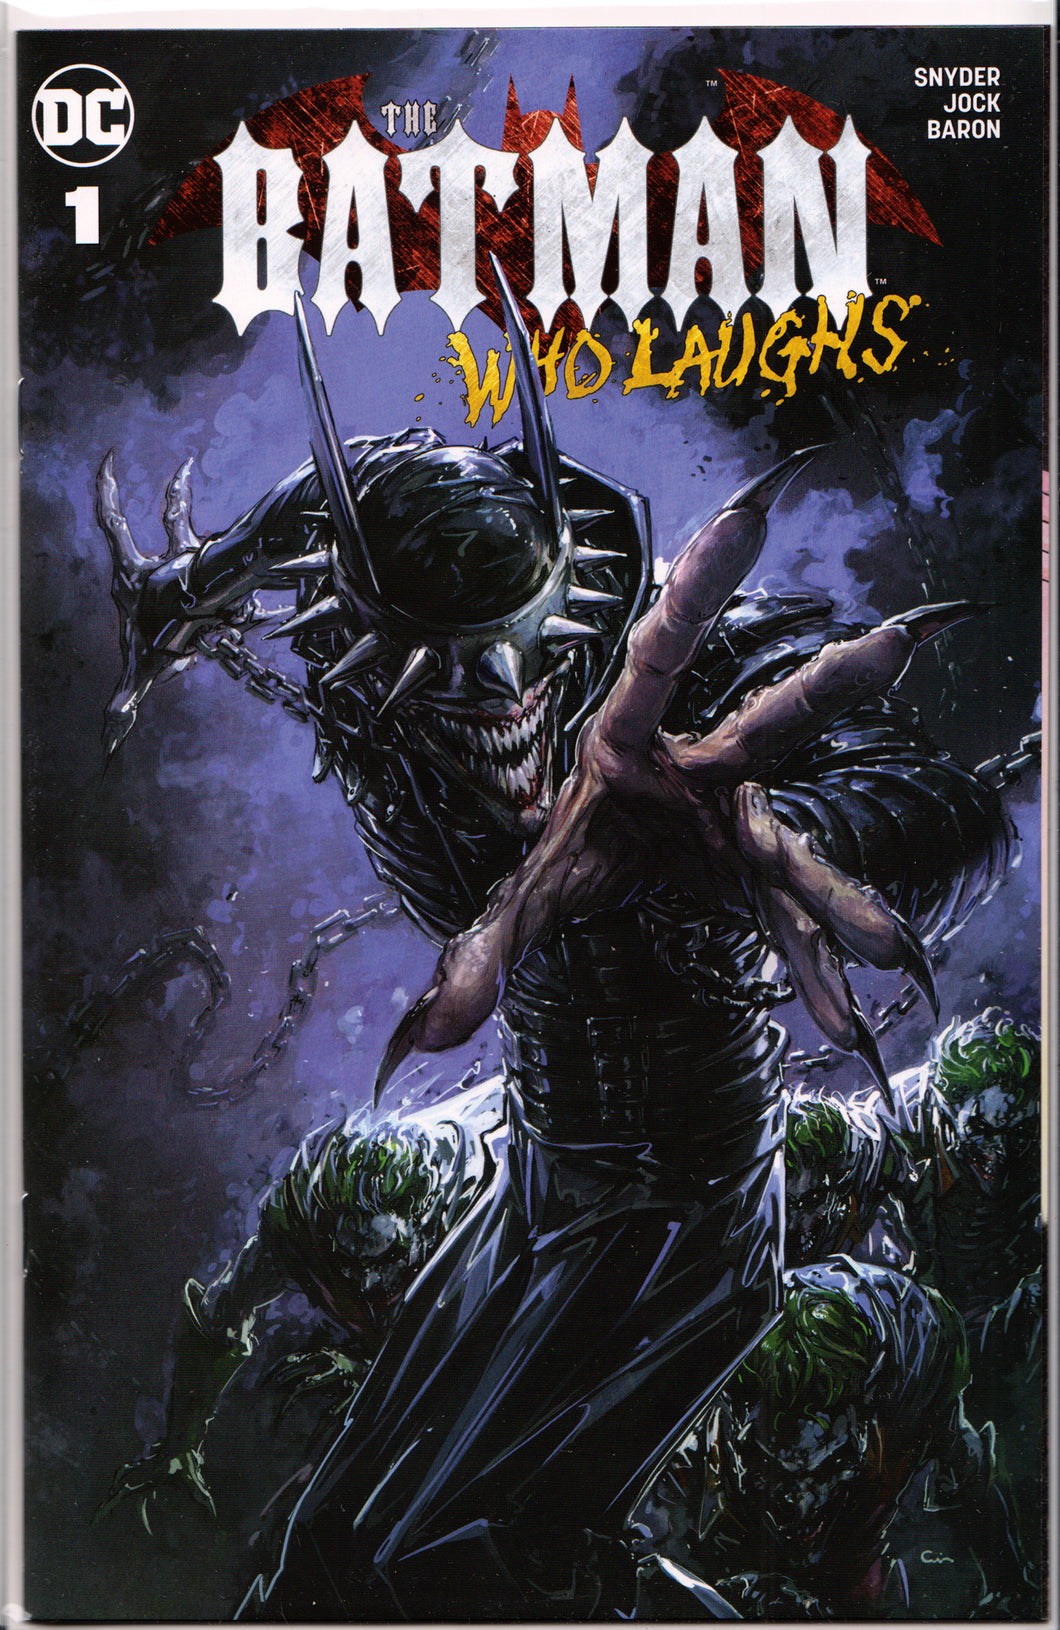 THE BATMAN WHO LAUGHS #1 CLAYTON CRAIN VARIANT ~ Scorpion Exclusive ~ DC Comics